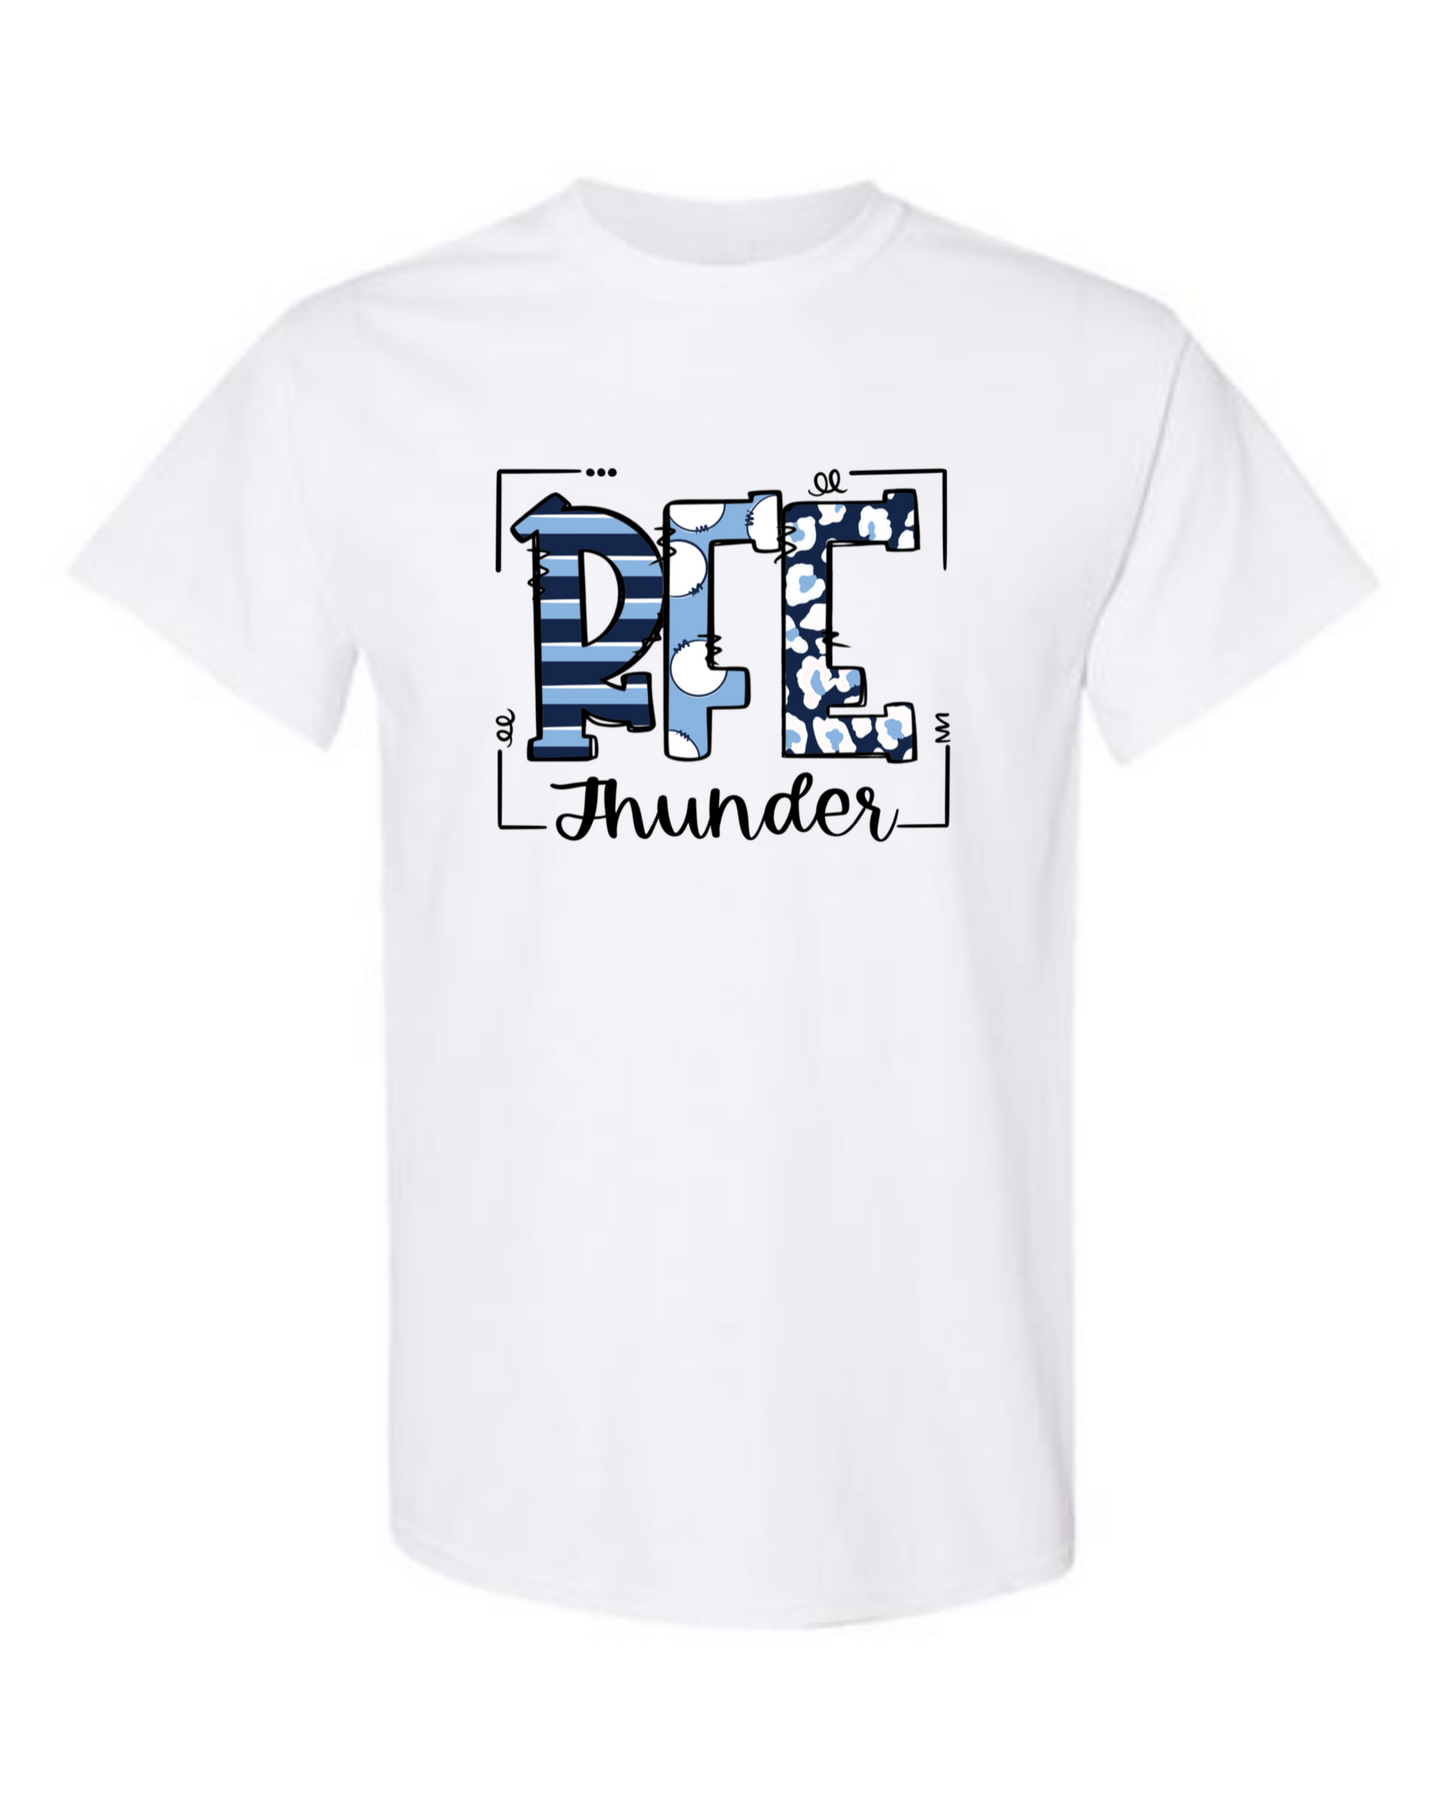 RFE Thunder Tshirt